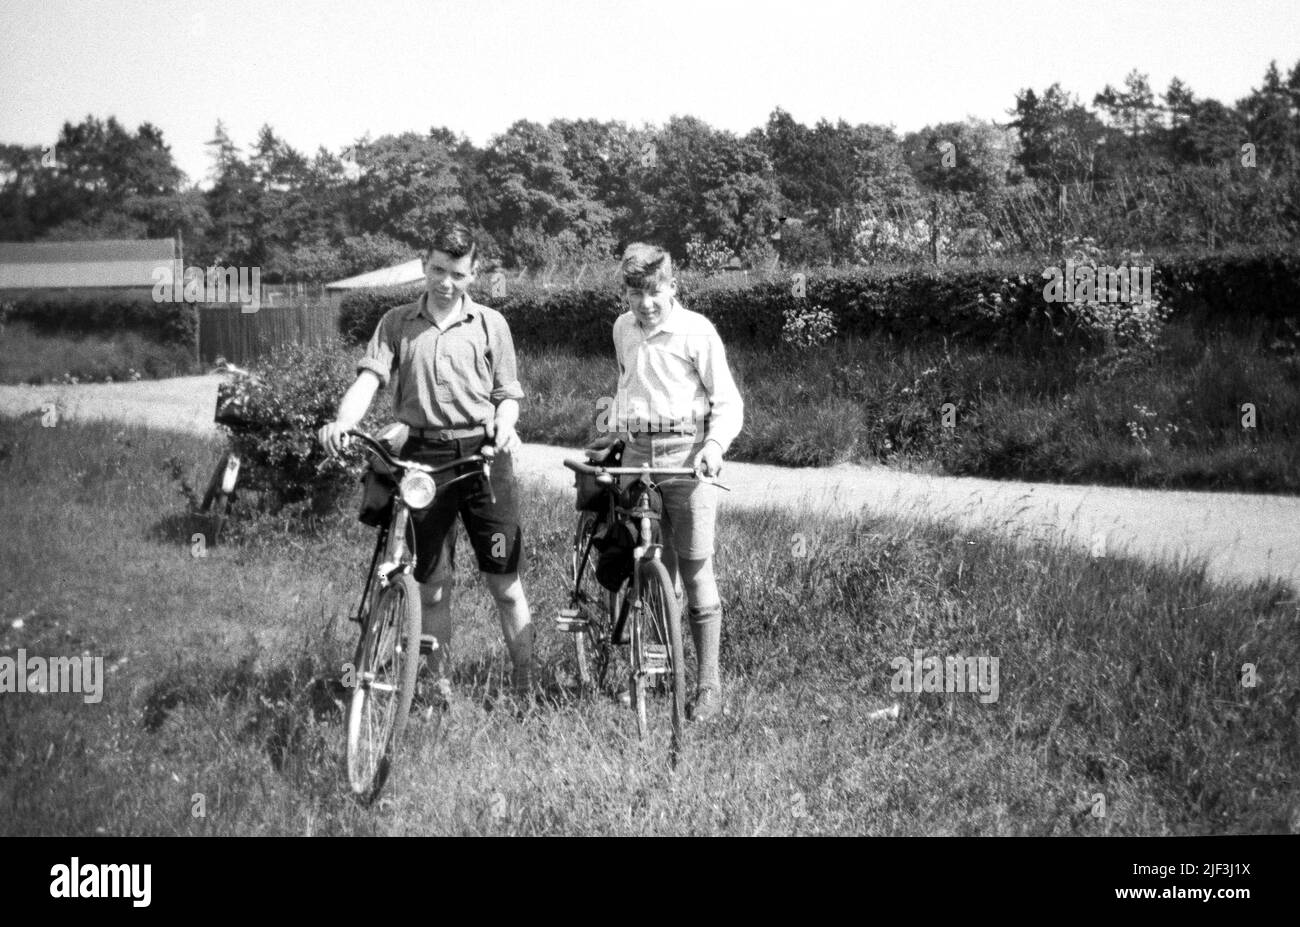 1930s, storico, due ragazzi adolescenti più anziani in piedi con le loro biciclette fuori in una zona erbosa accanto a una corsia di campagna, Newbury, Berks, Inghilterra, Regno Unito. Foto Stock